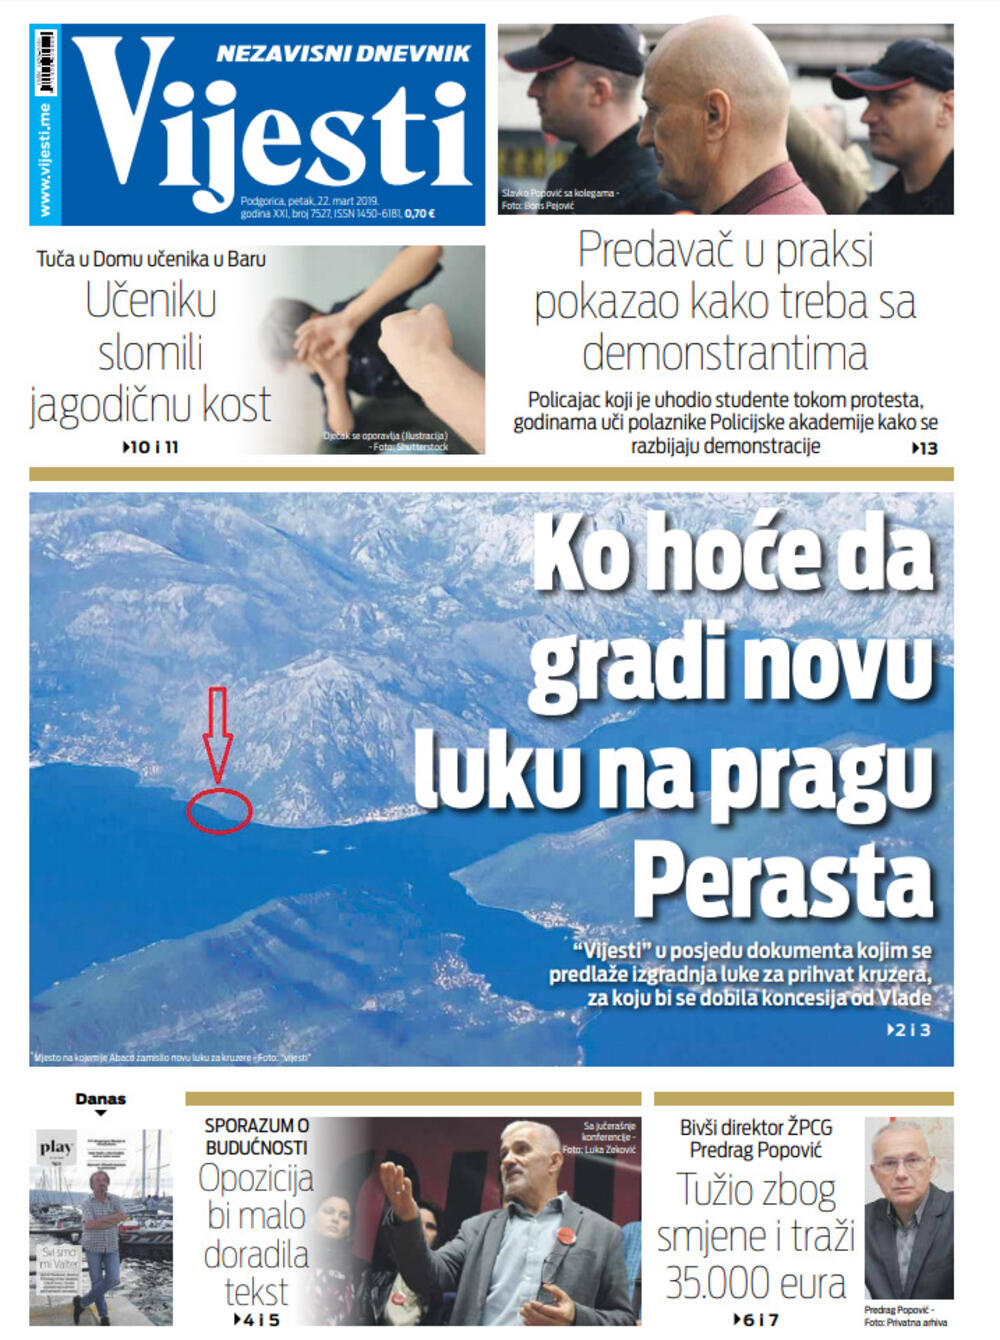 Naslovna strana "Vijesti" za 22. mart, Foto: Vijesti